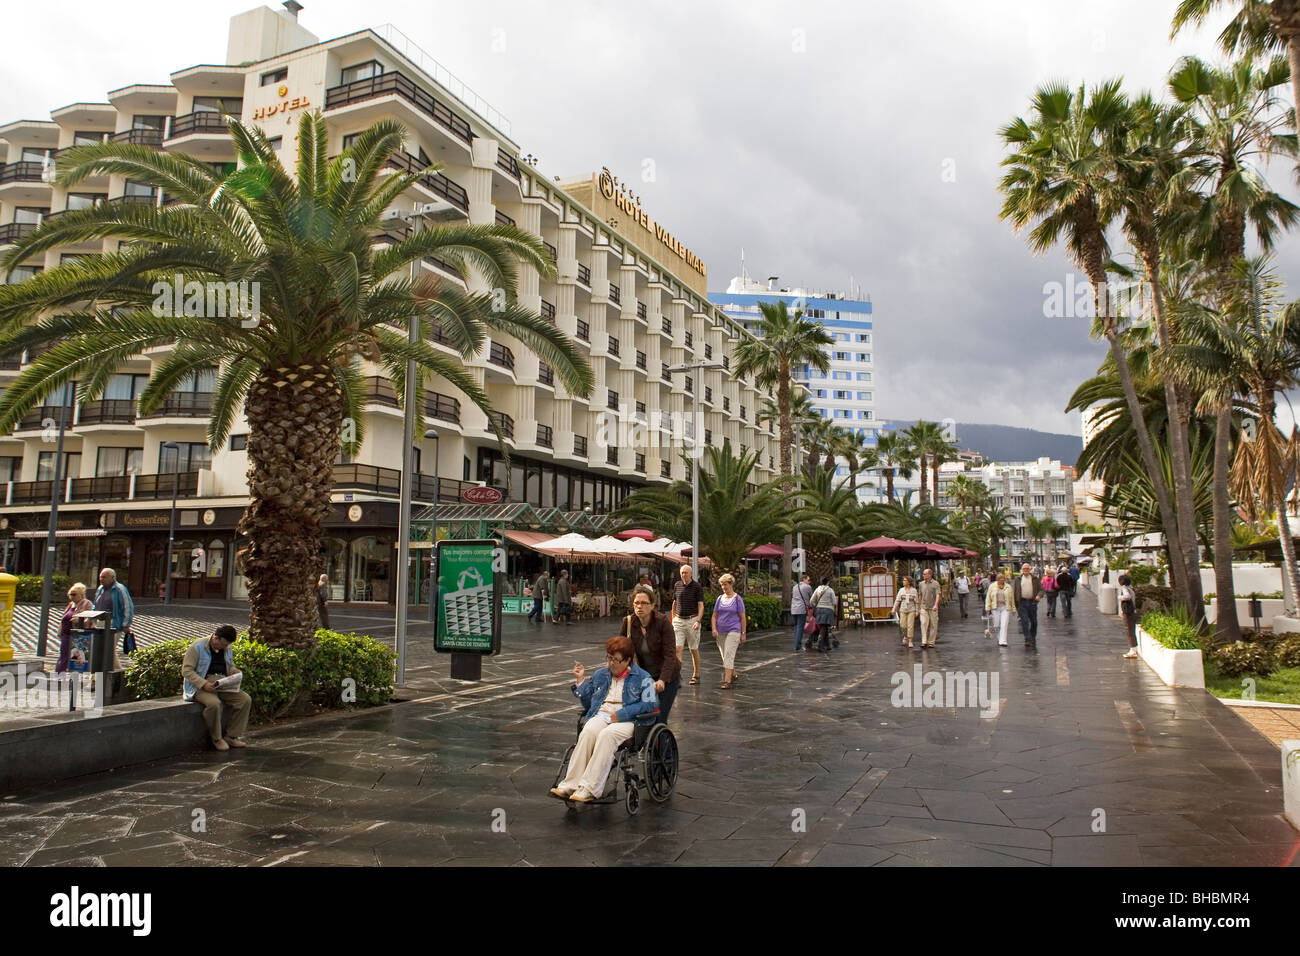 Les gens se promener le long de la rue dans la ville de Puerto de la Cruz sur l'île de Tenerife. Banque D'Images